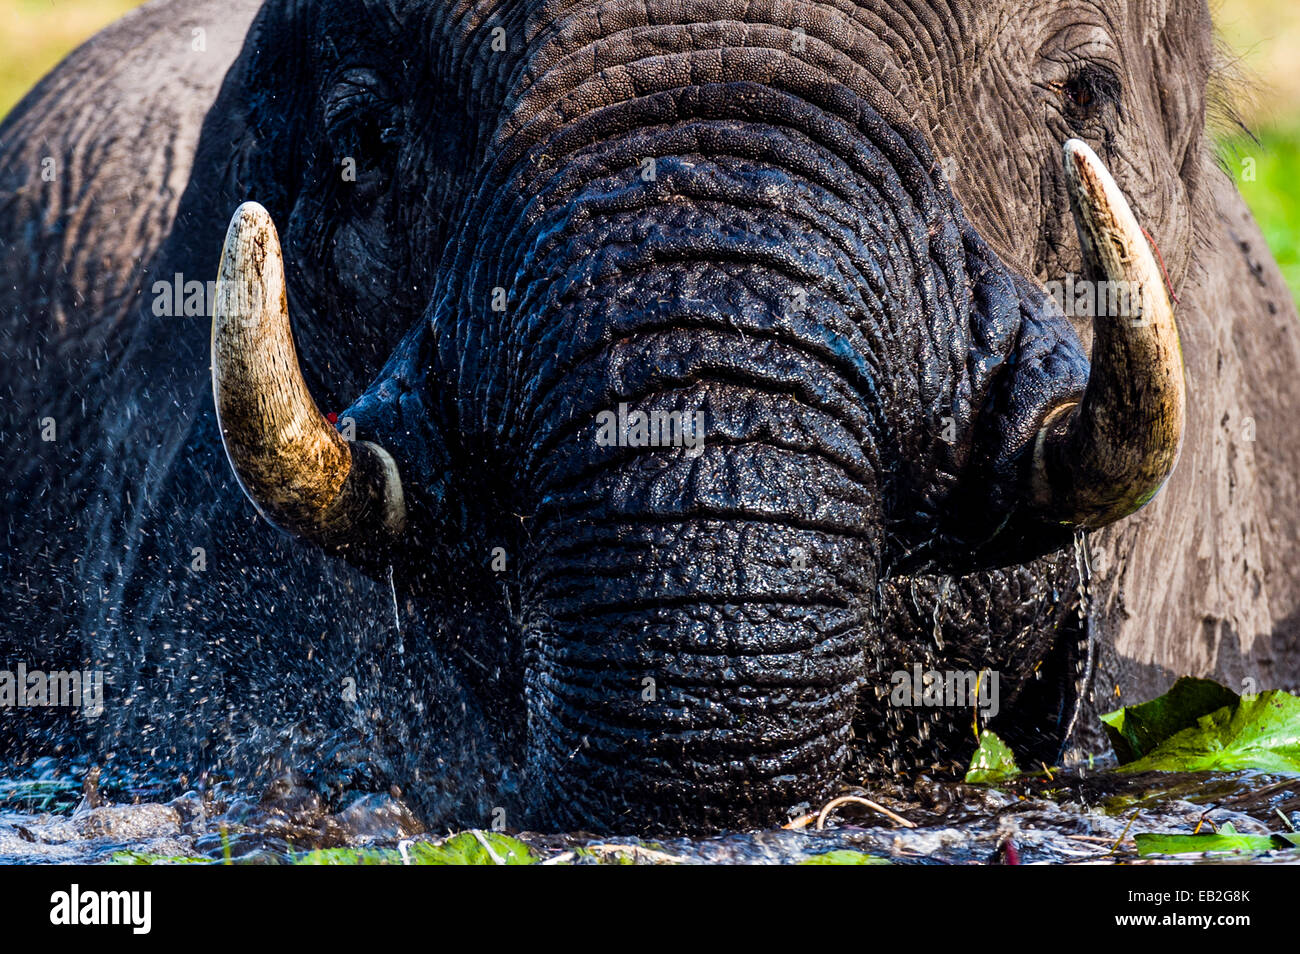 Gli elefanti africani tirare su impianti idrici per mangiare con zanne e il tronco. Foto Stock